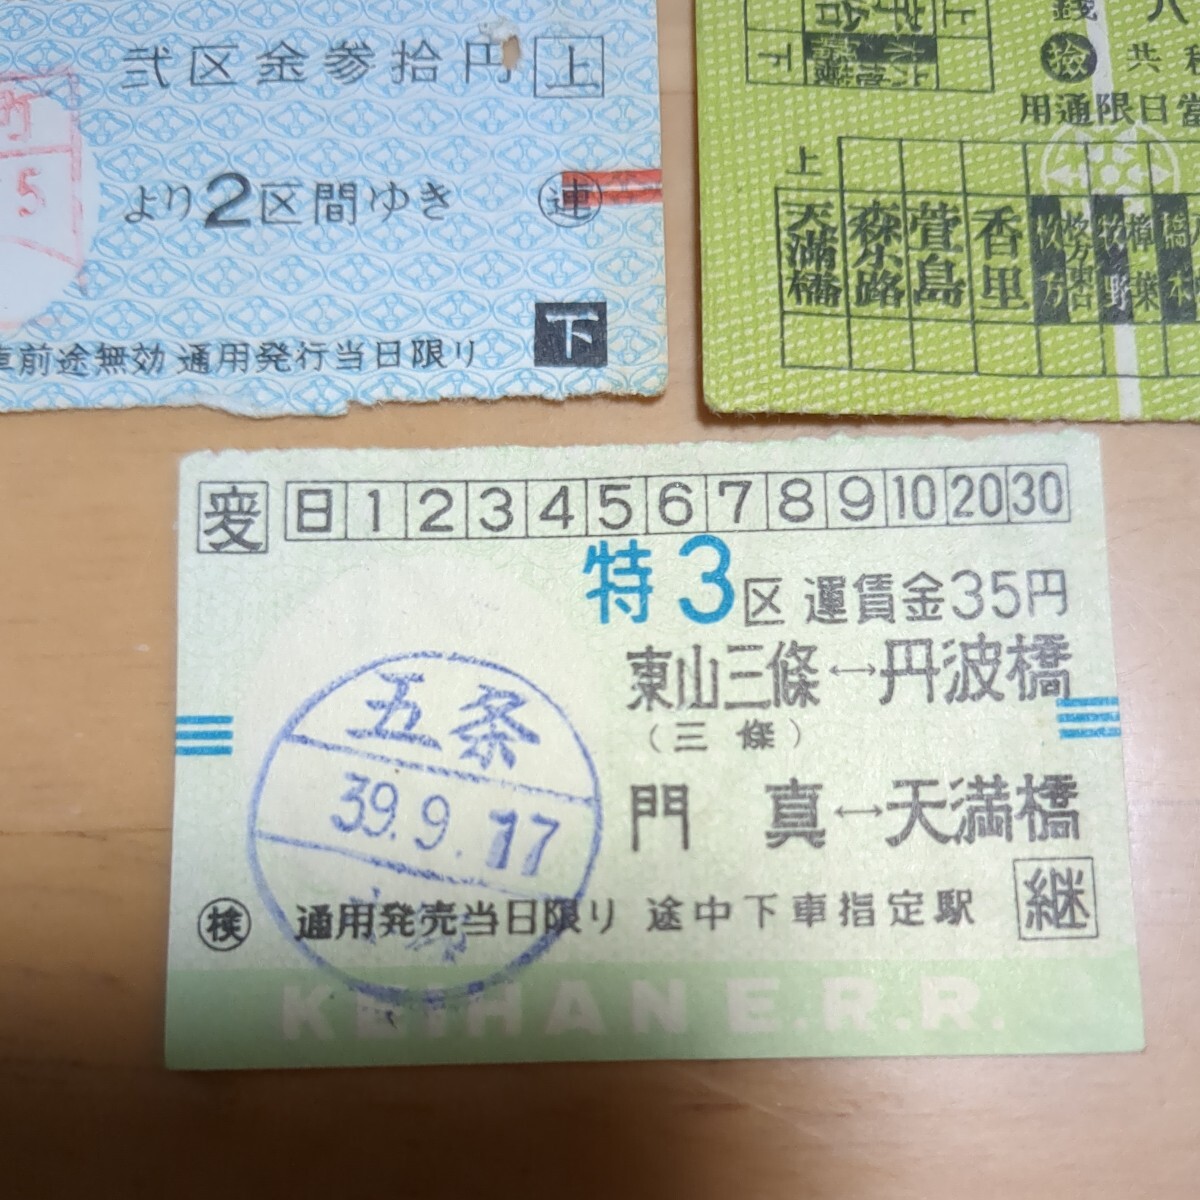  железная дорога . талон битва передний столица . электро- . пассажирский билет билет Showa первый период старый билет суммировать ⑱